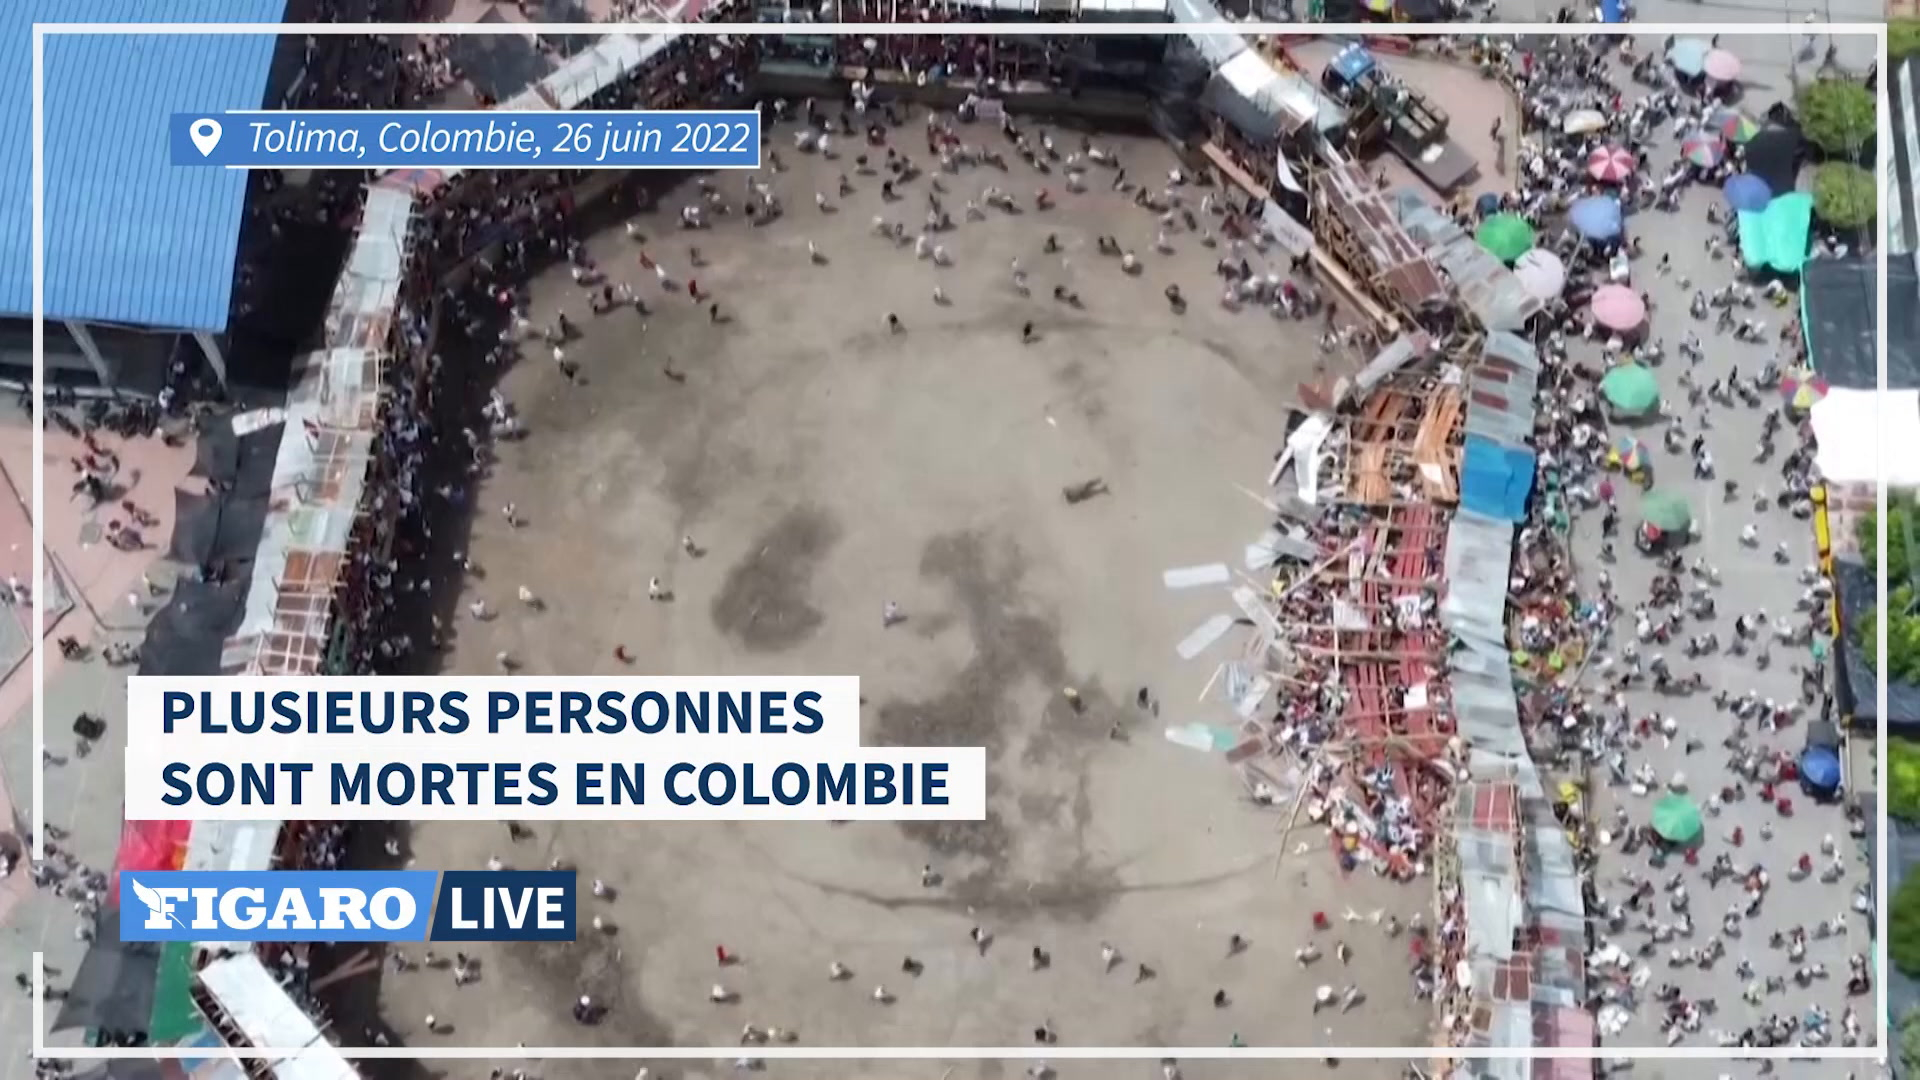 Colombie: images aériennes de l’effondrement des gradins d’une arène ayant fait plusieurs morts